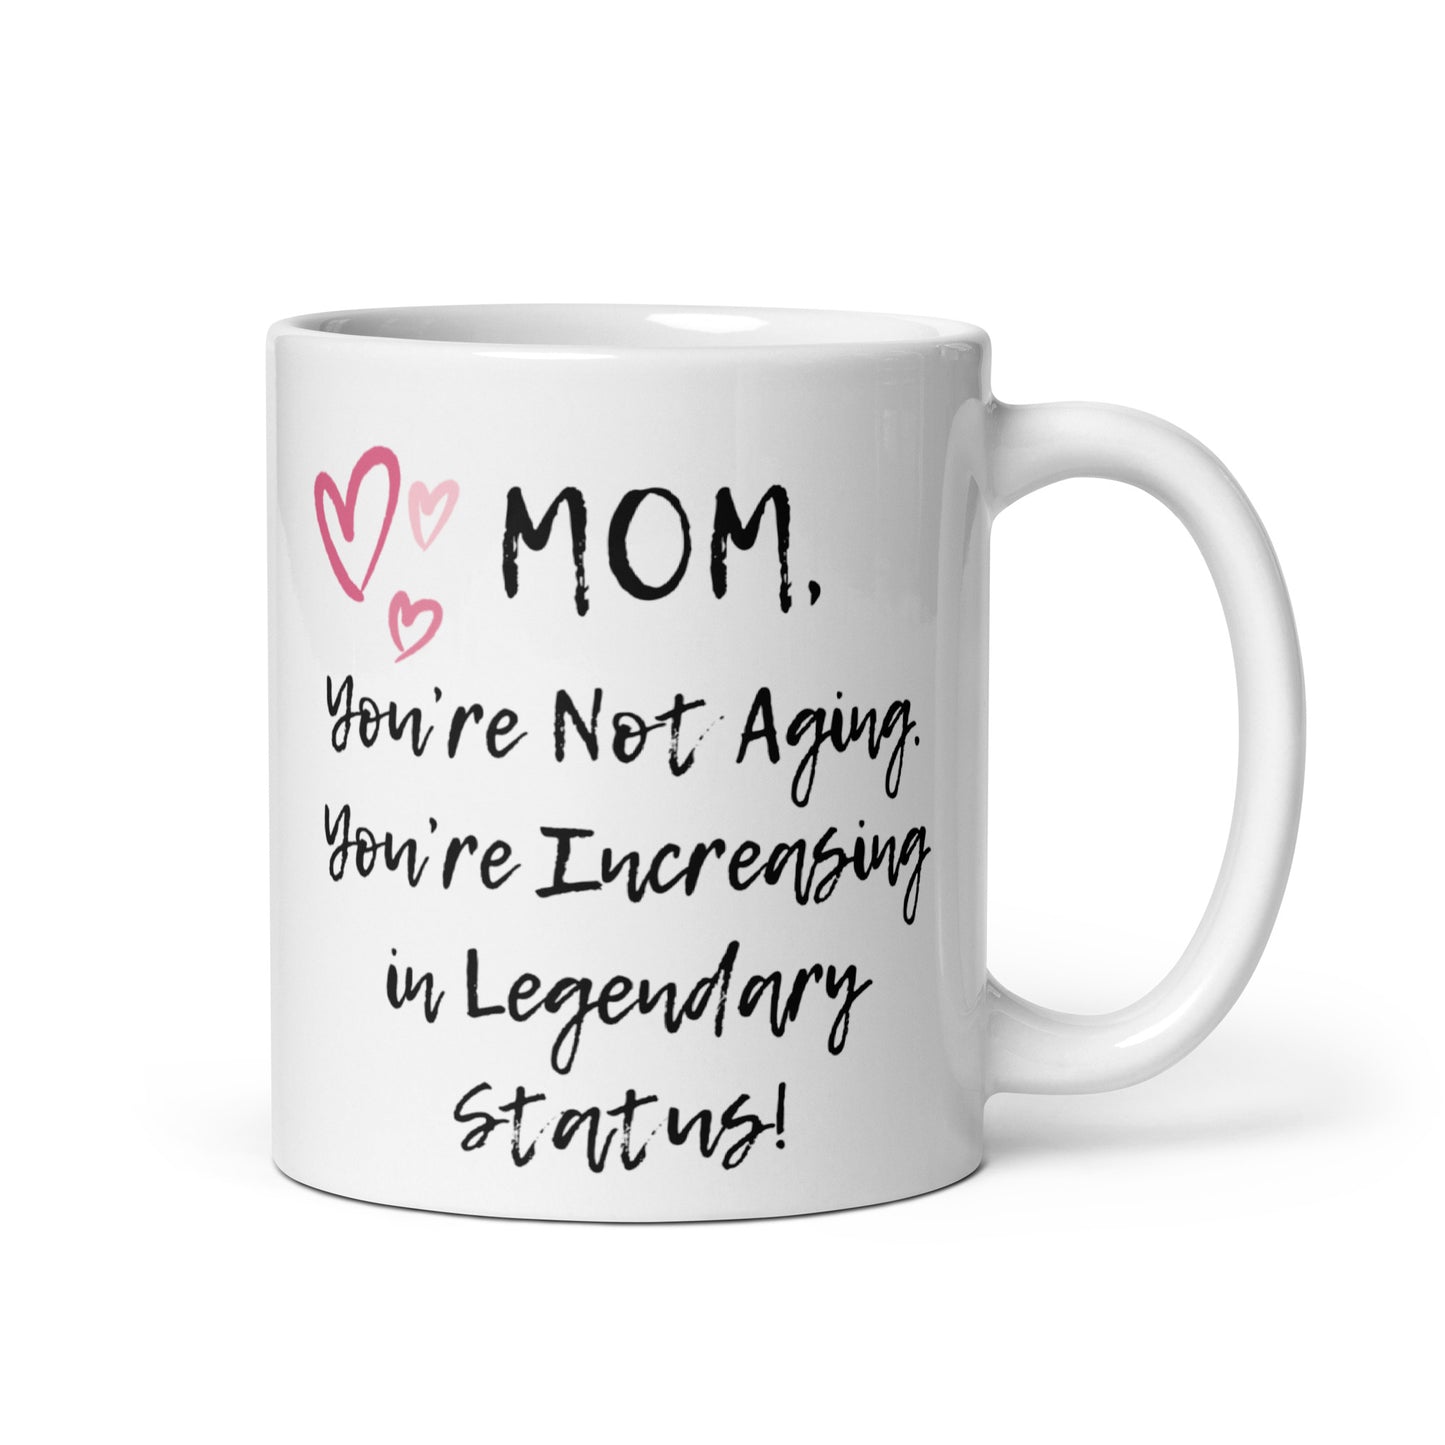 Mom Mug - Legendary White Glossy Mug